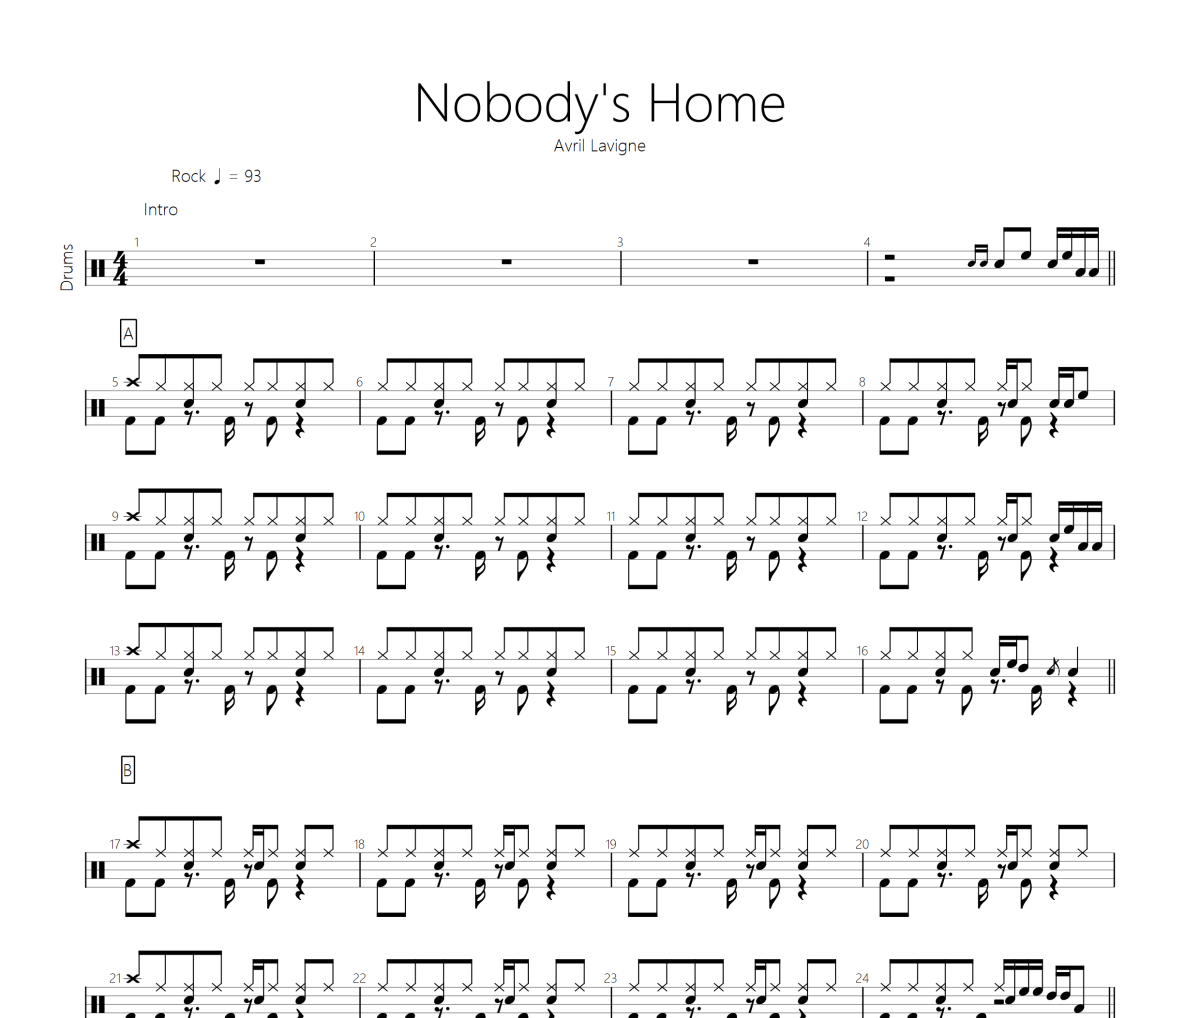 Avril Lavigne（艾薇儿）《noboby's home》架子鼓|爵士鼓|鼓谱 晓牧制谱